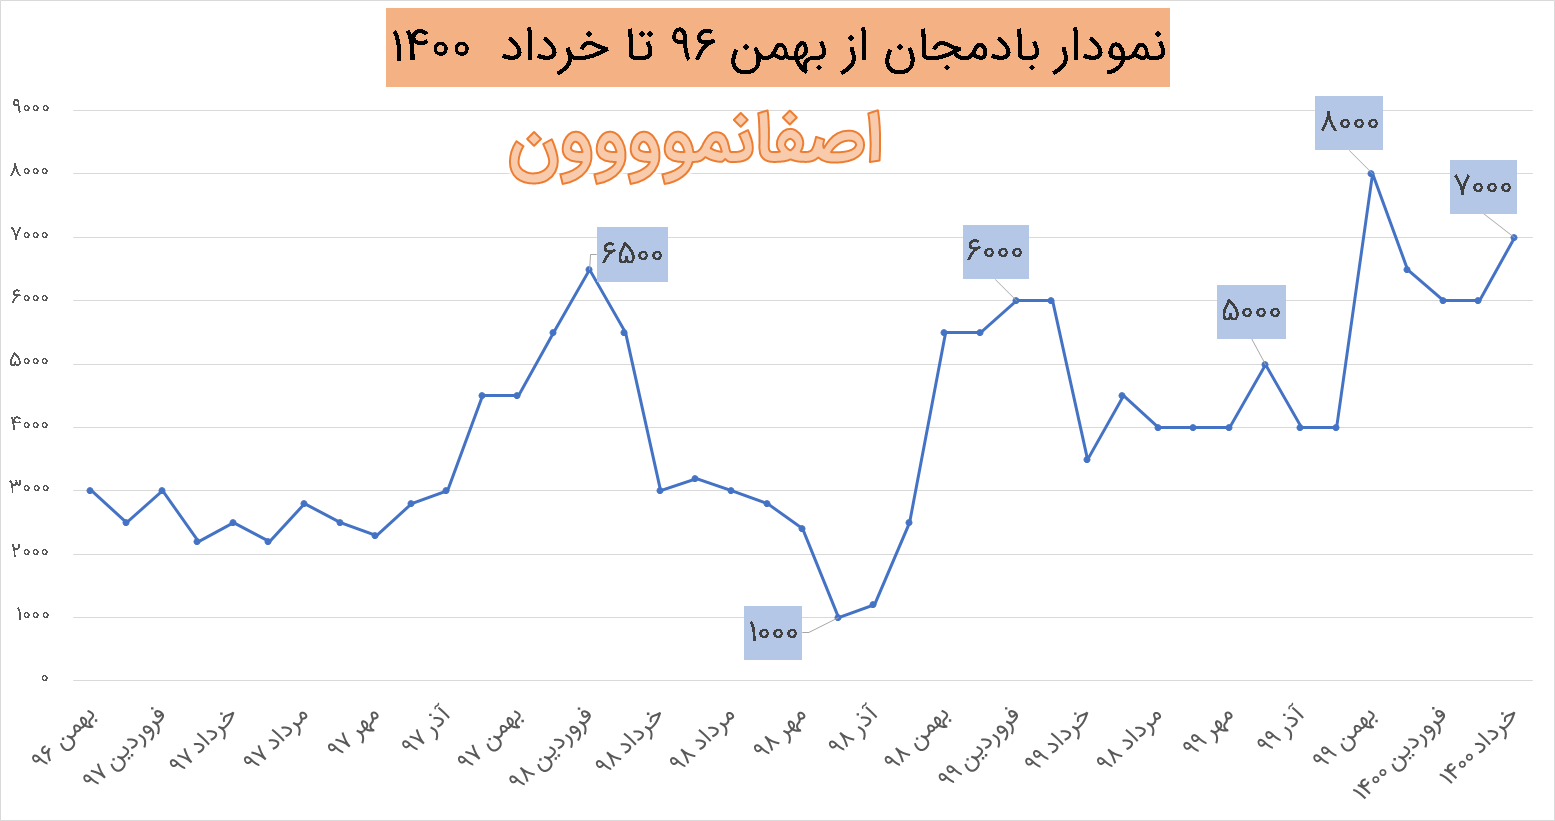 نمودار قیمت بادمجان در سال های 96 تا خرداد 1400